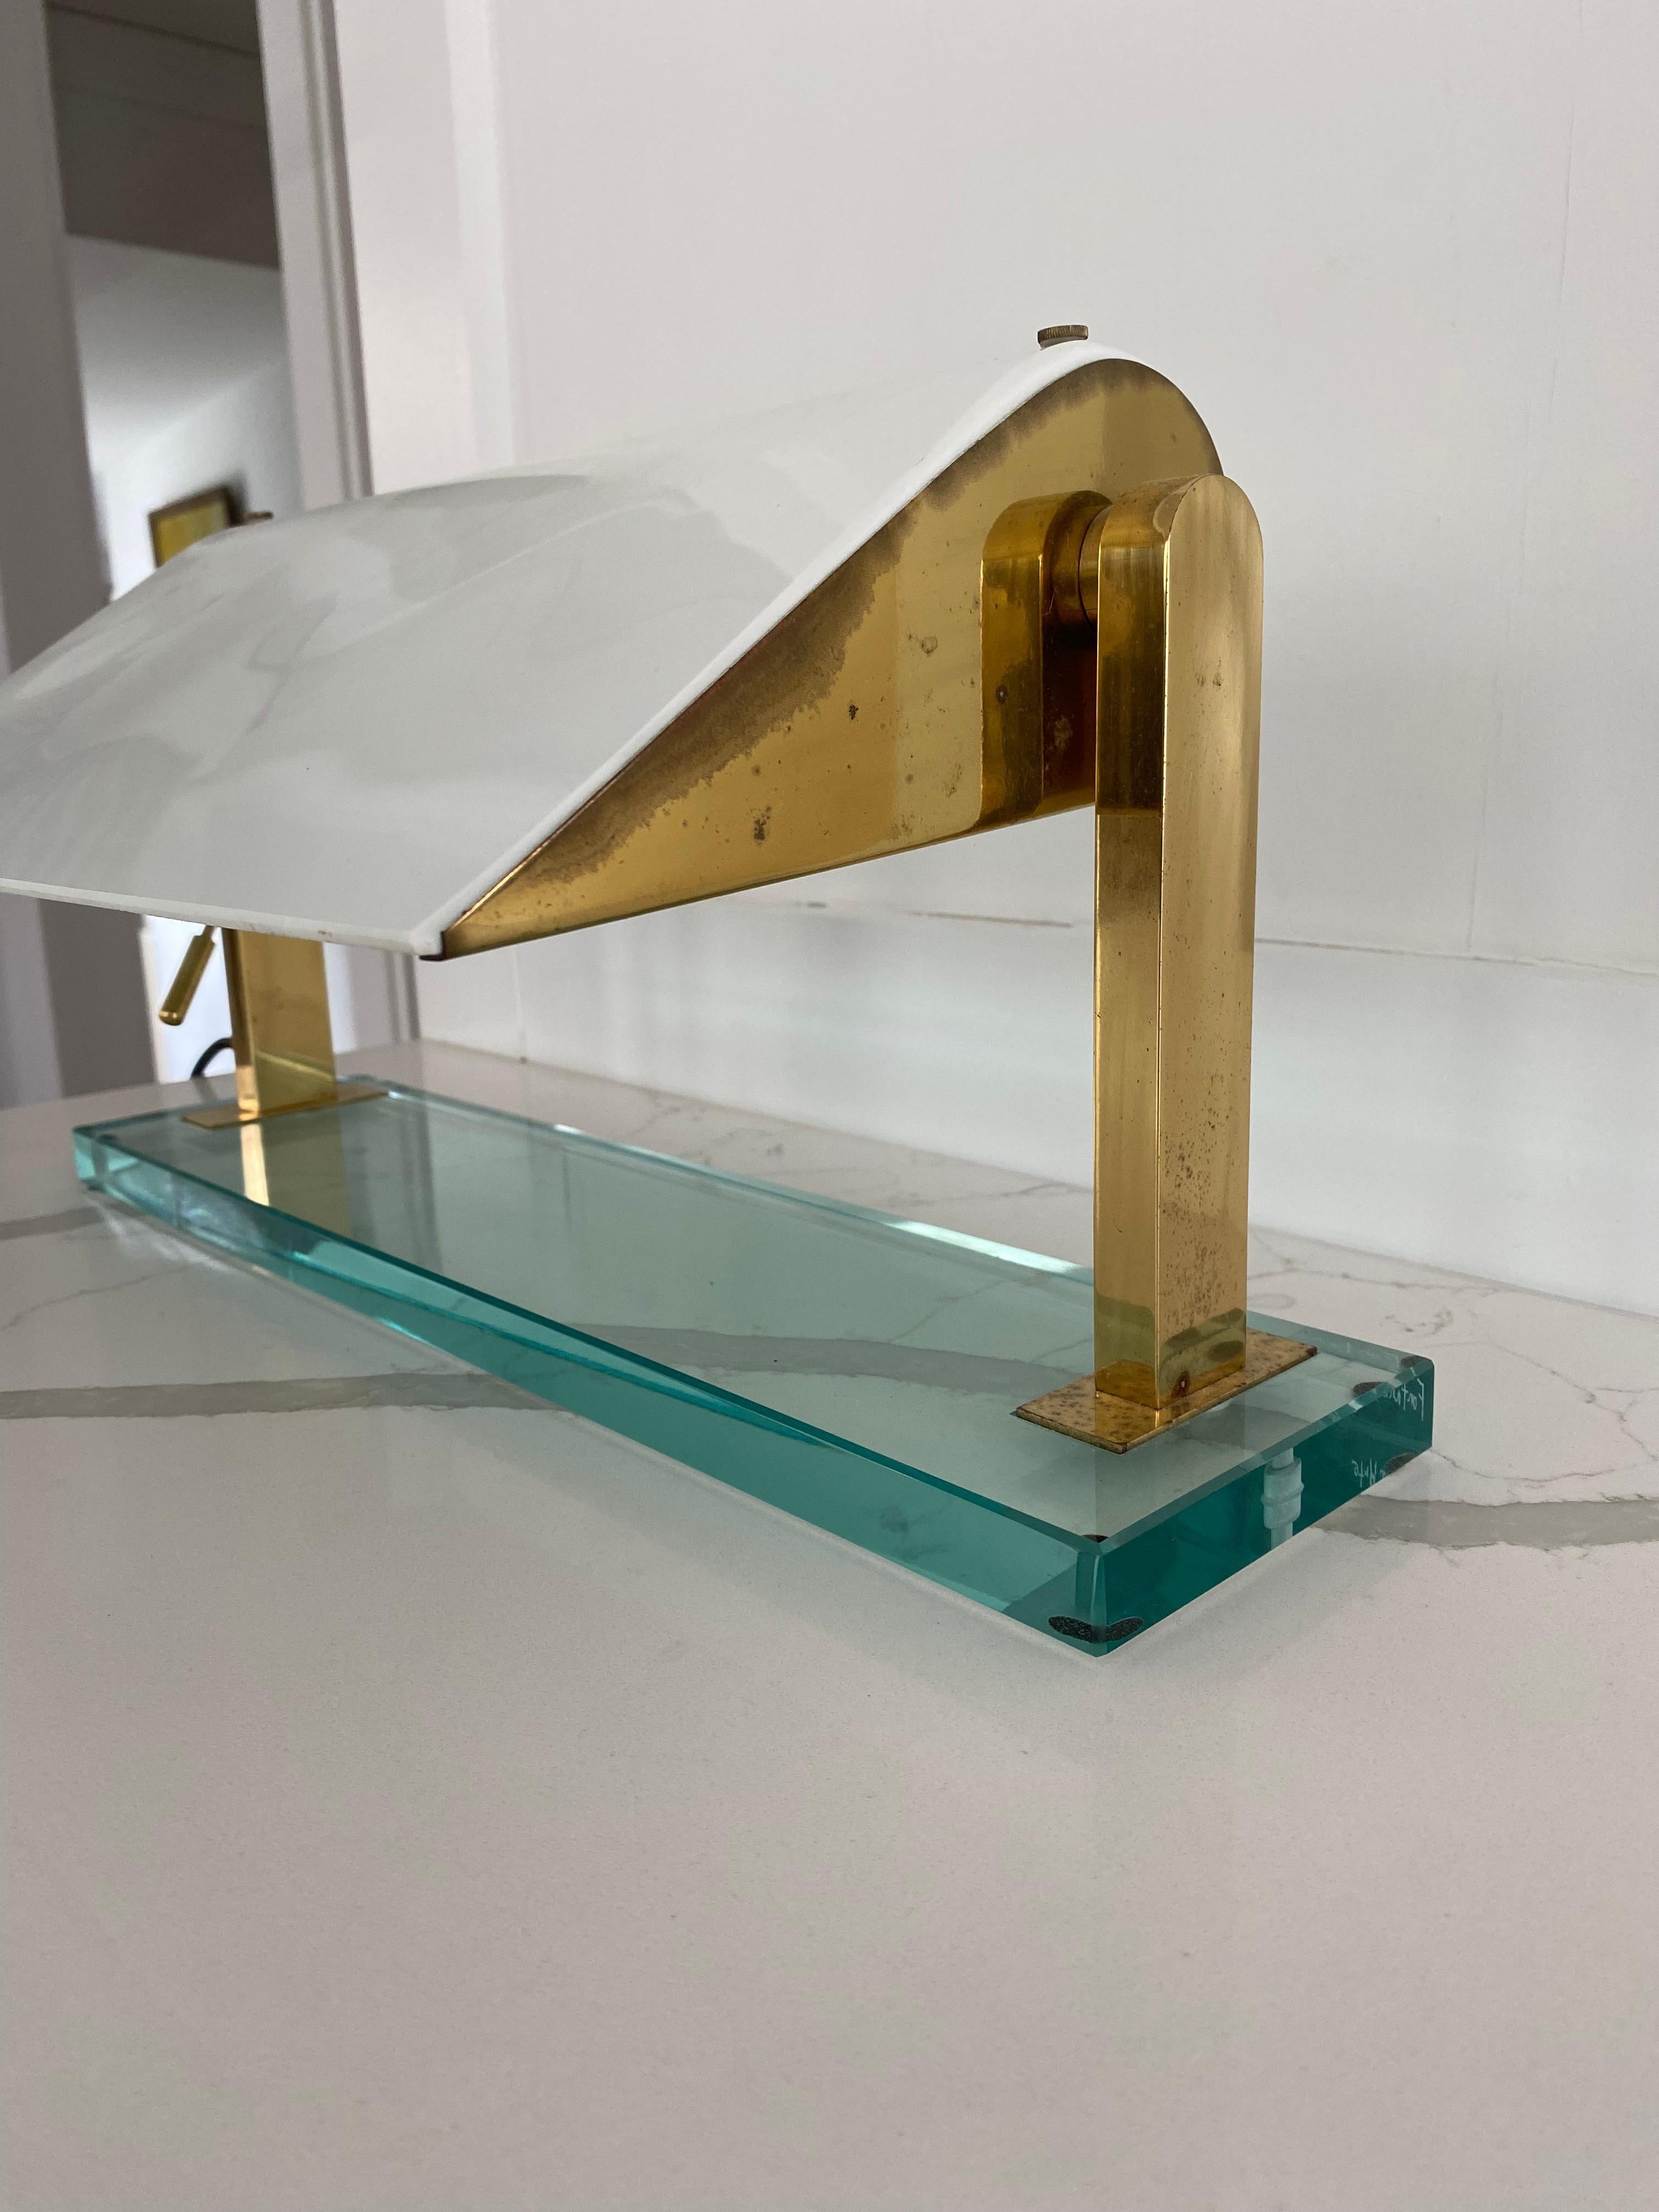 Lampe de bureau MODEL 0836 by Cheese for Fontana Arte composée d'une structure en laiton sur base en cristal avec abat-jour en verre de lait.

L'abat-jour en verre est rotatif.

Base avec signature gravée 